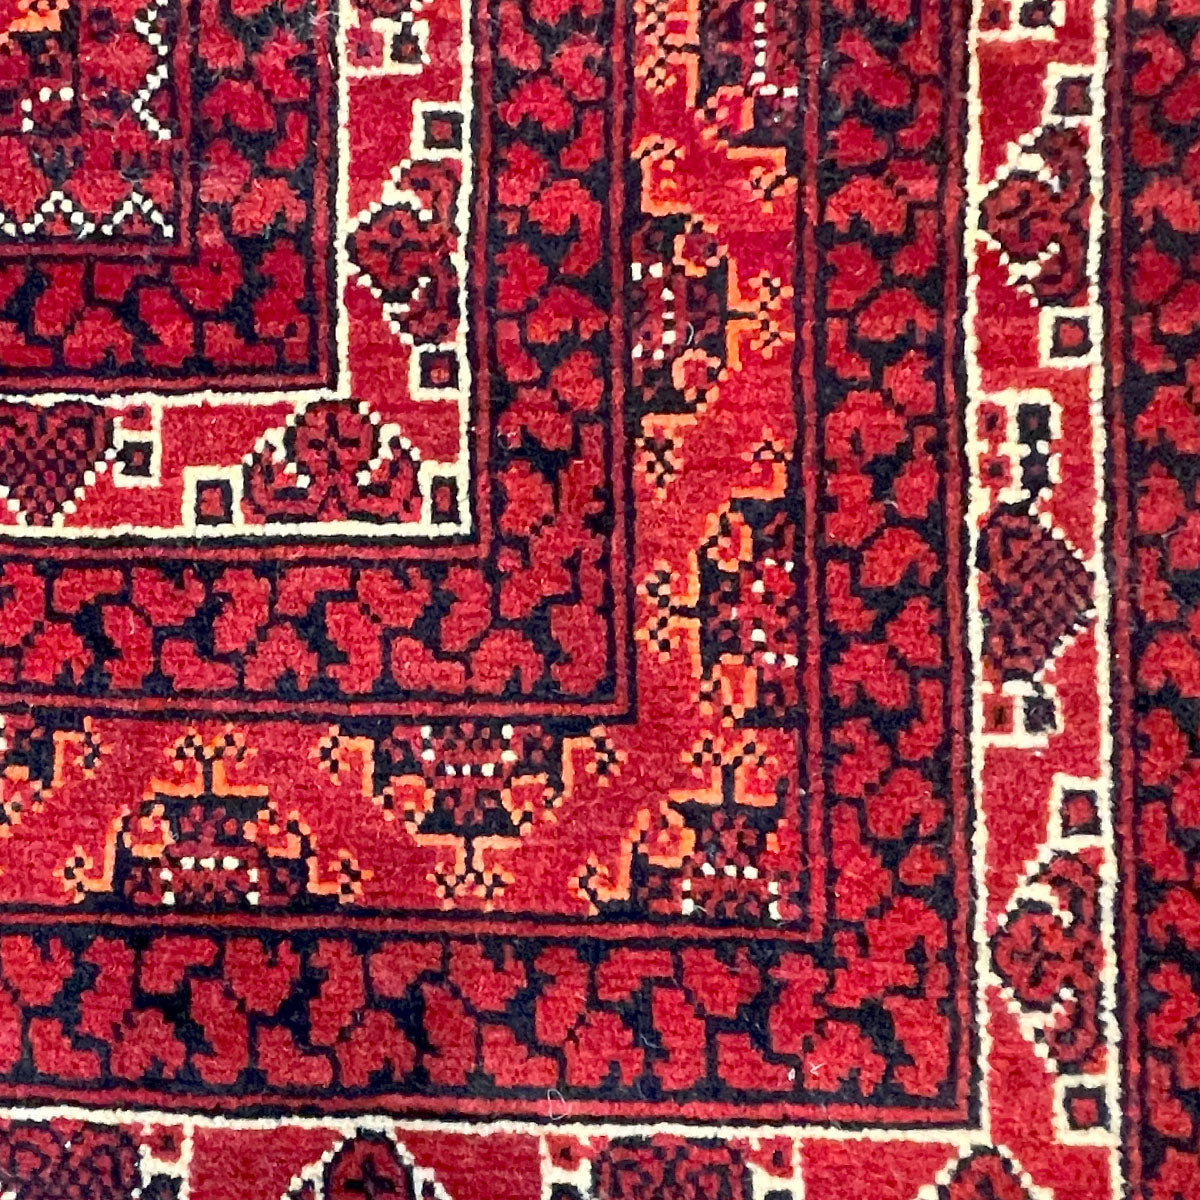 שטיח אפגני באשיר 00 צבעוני 199*150